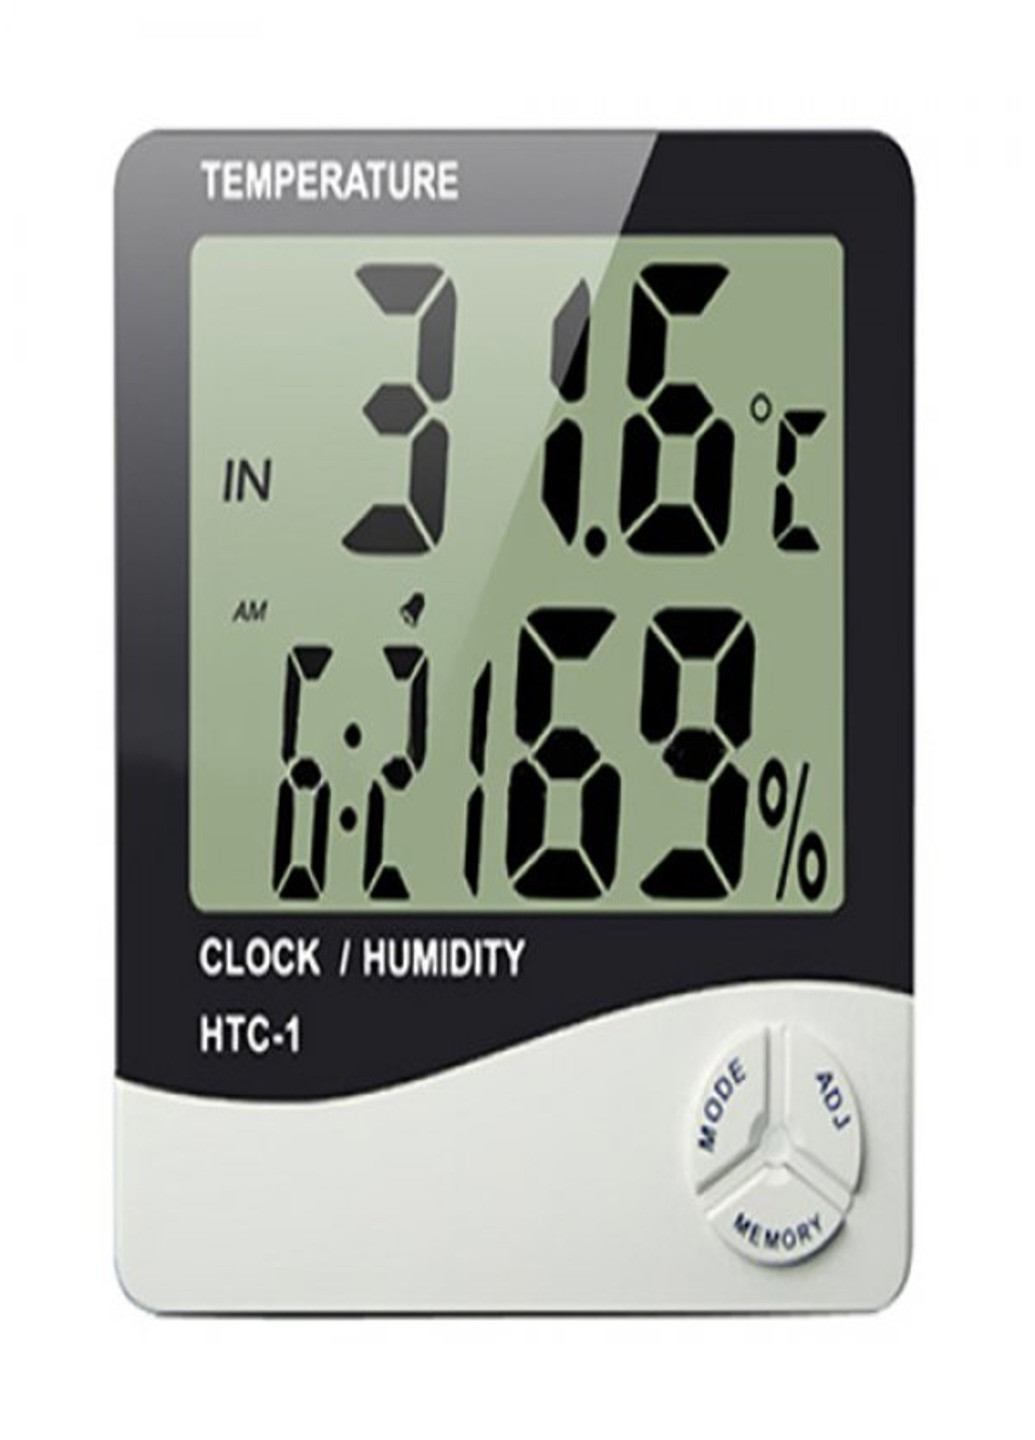 Гигрометр, термометр с измерителем влажности Термогигрометр цифровой - 1 часы будильник метеостанция HTC (253773126)